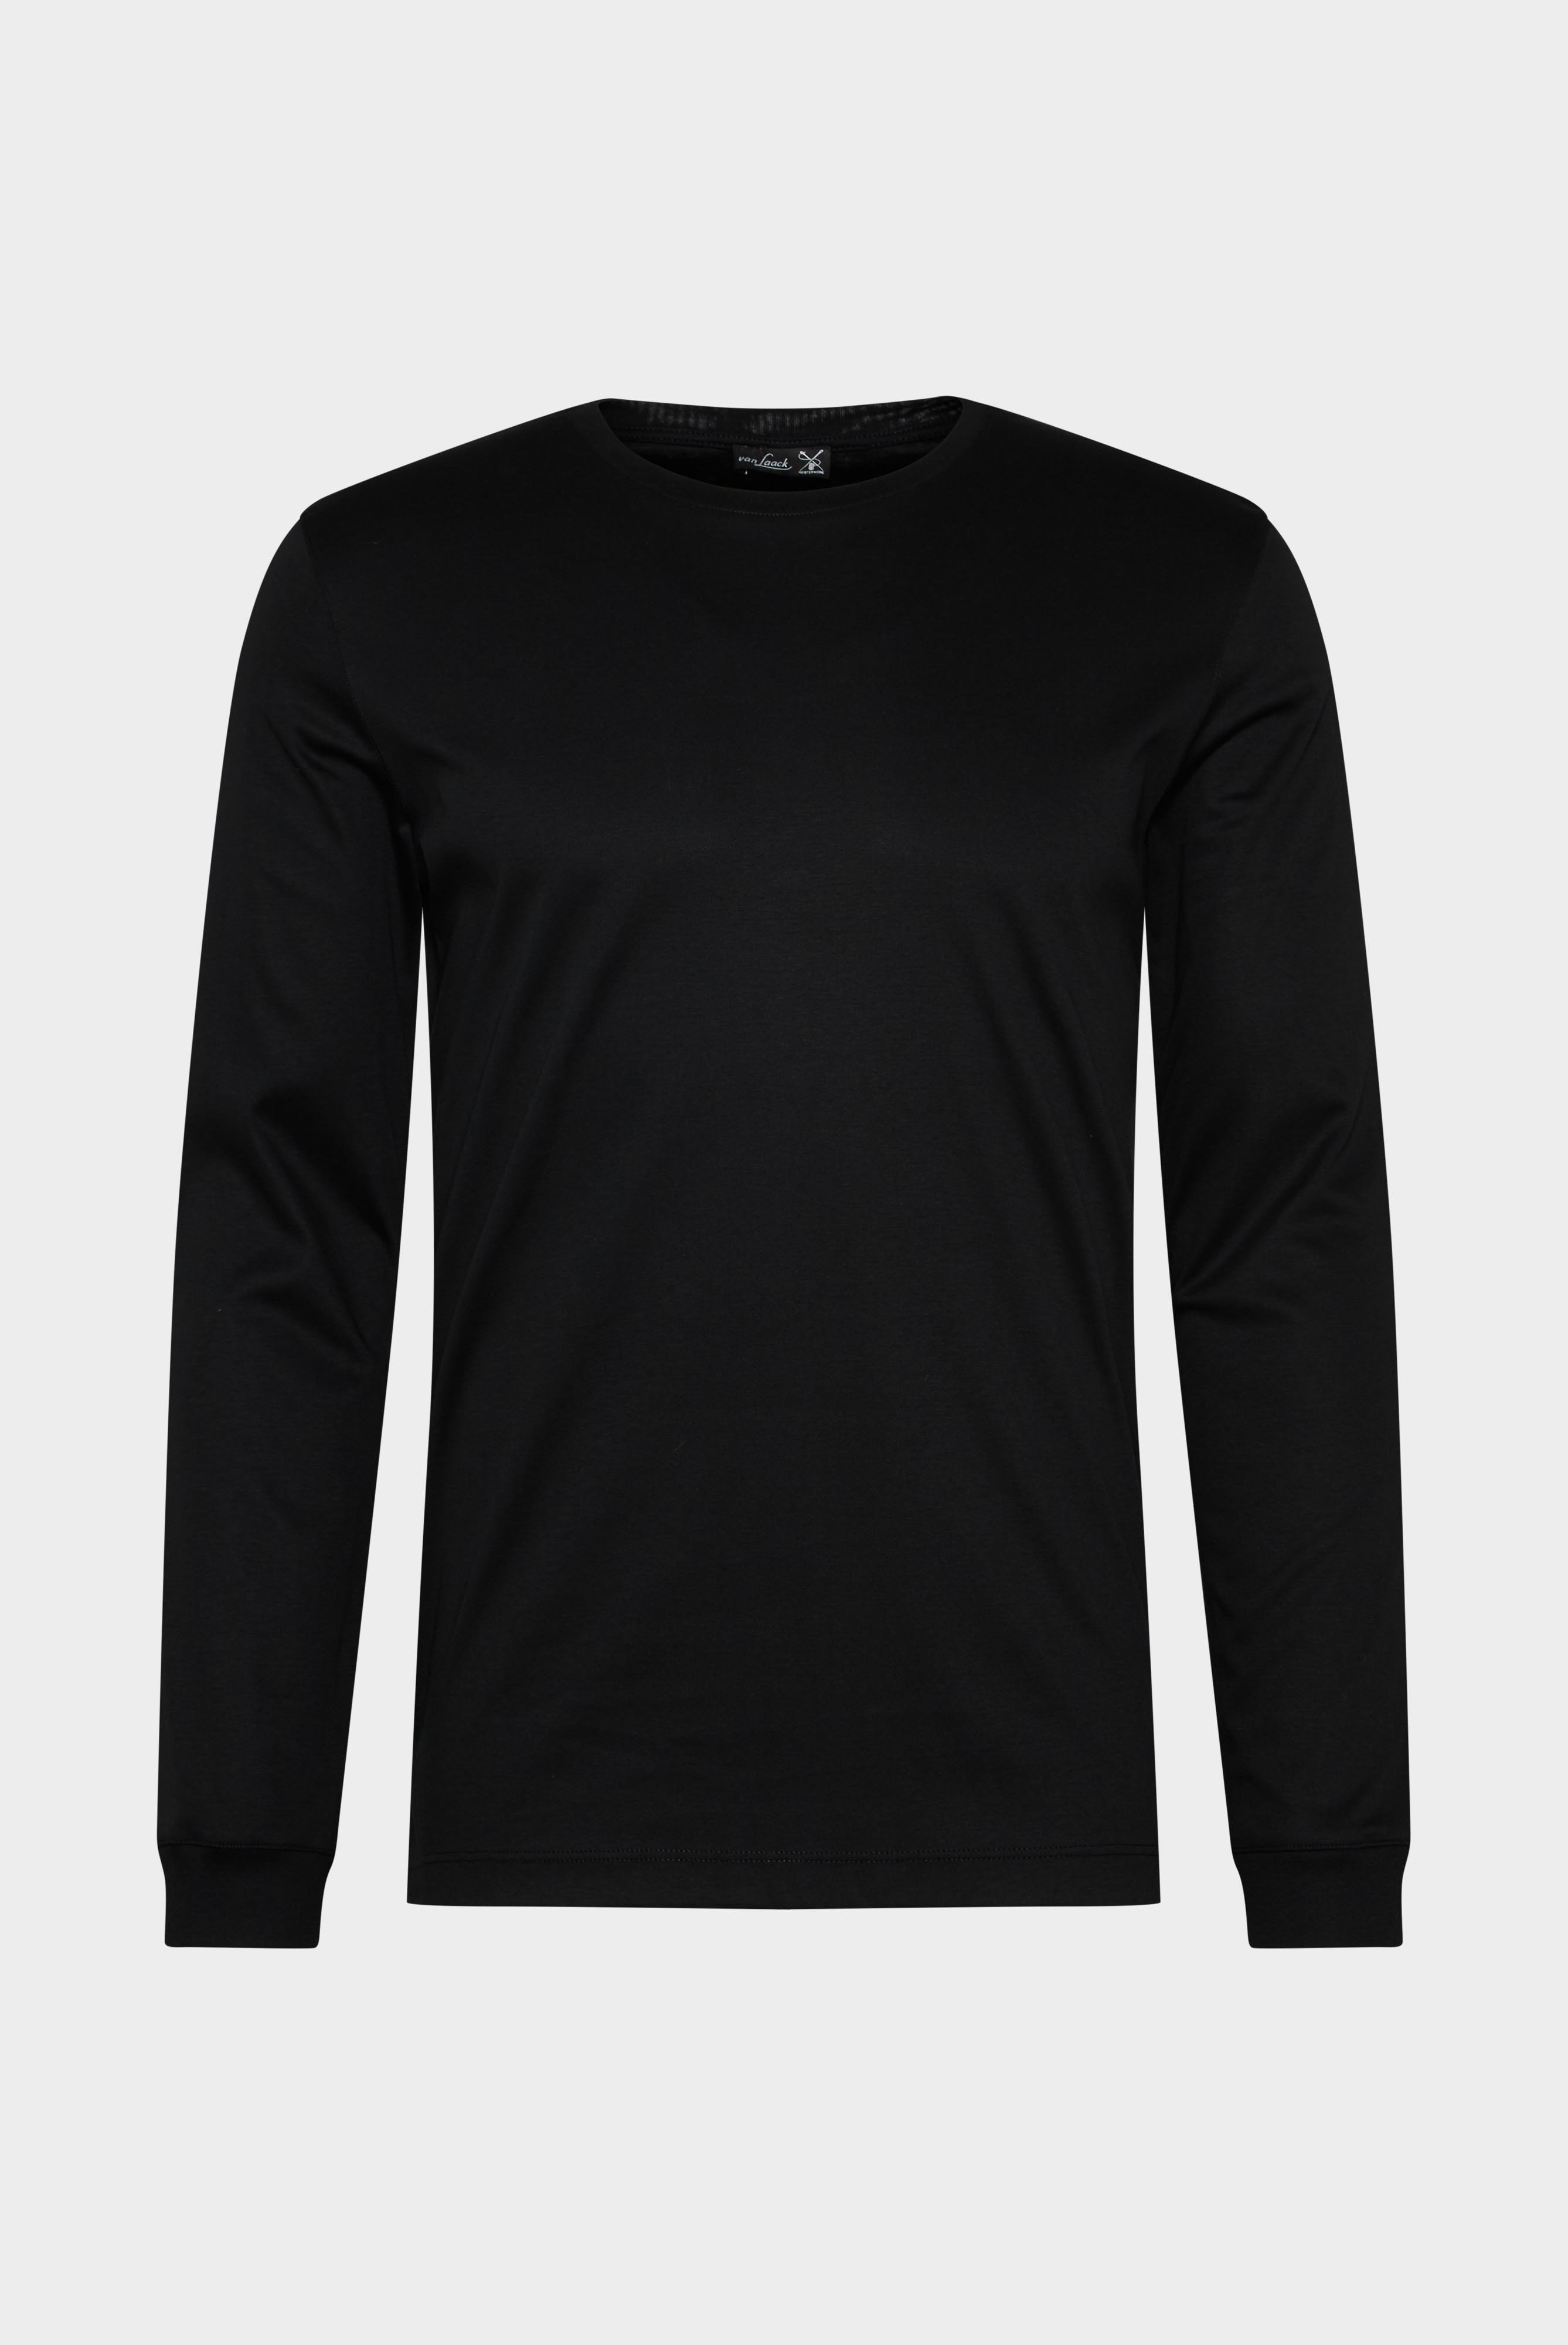 T-Shirts+Langarm Jersey T-Shirt mit Rundhals Slim Fit+20.1718.UX.180031.099.X4L